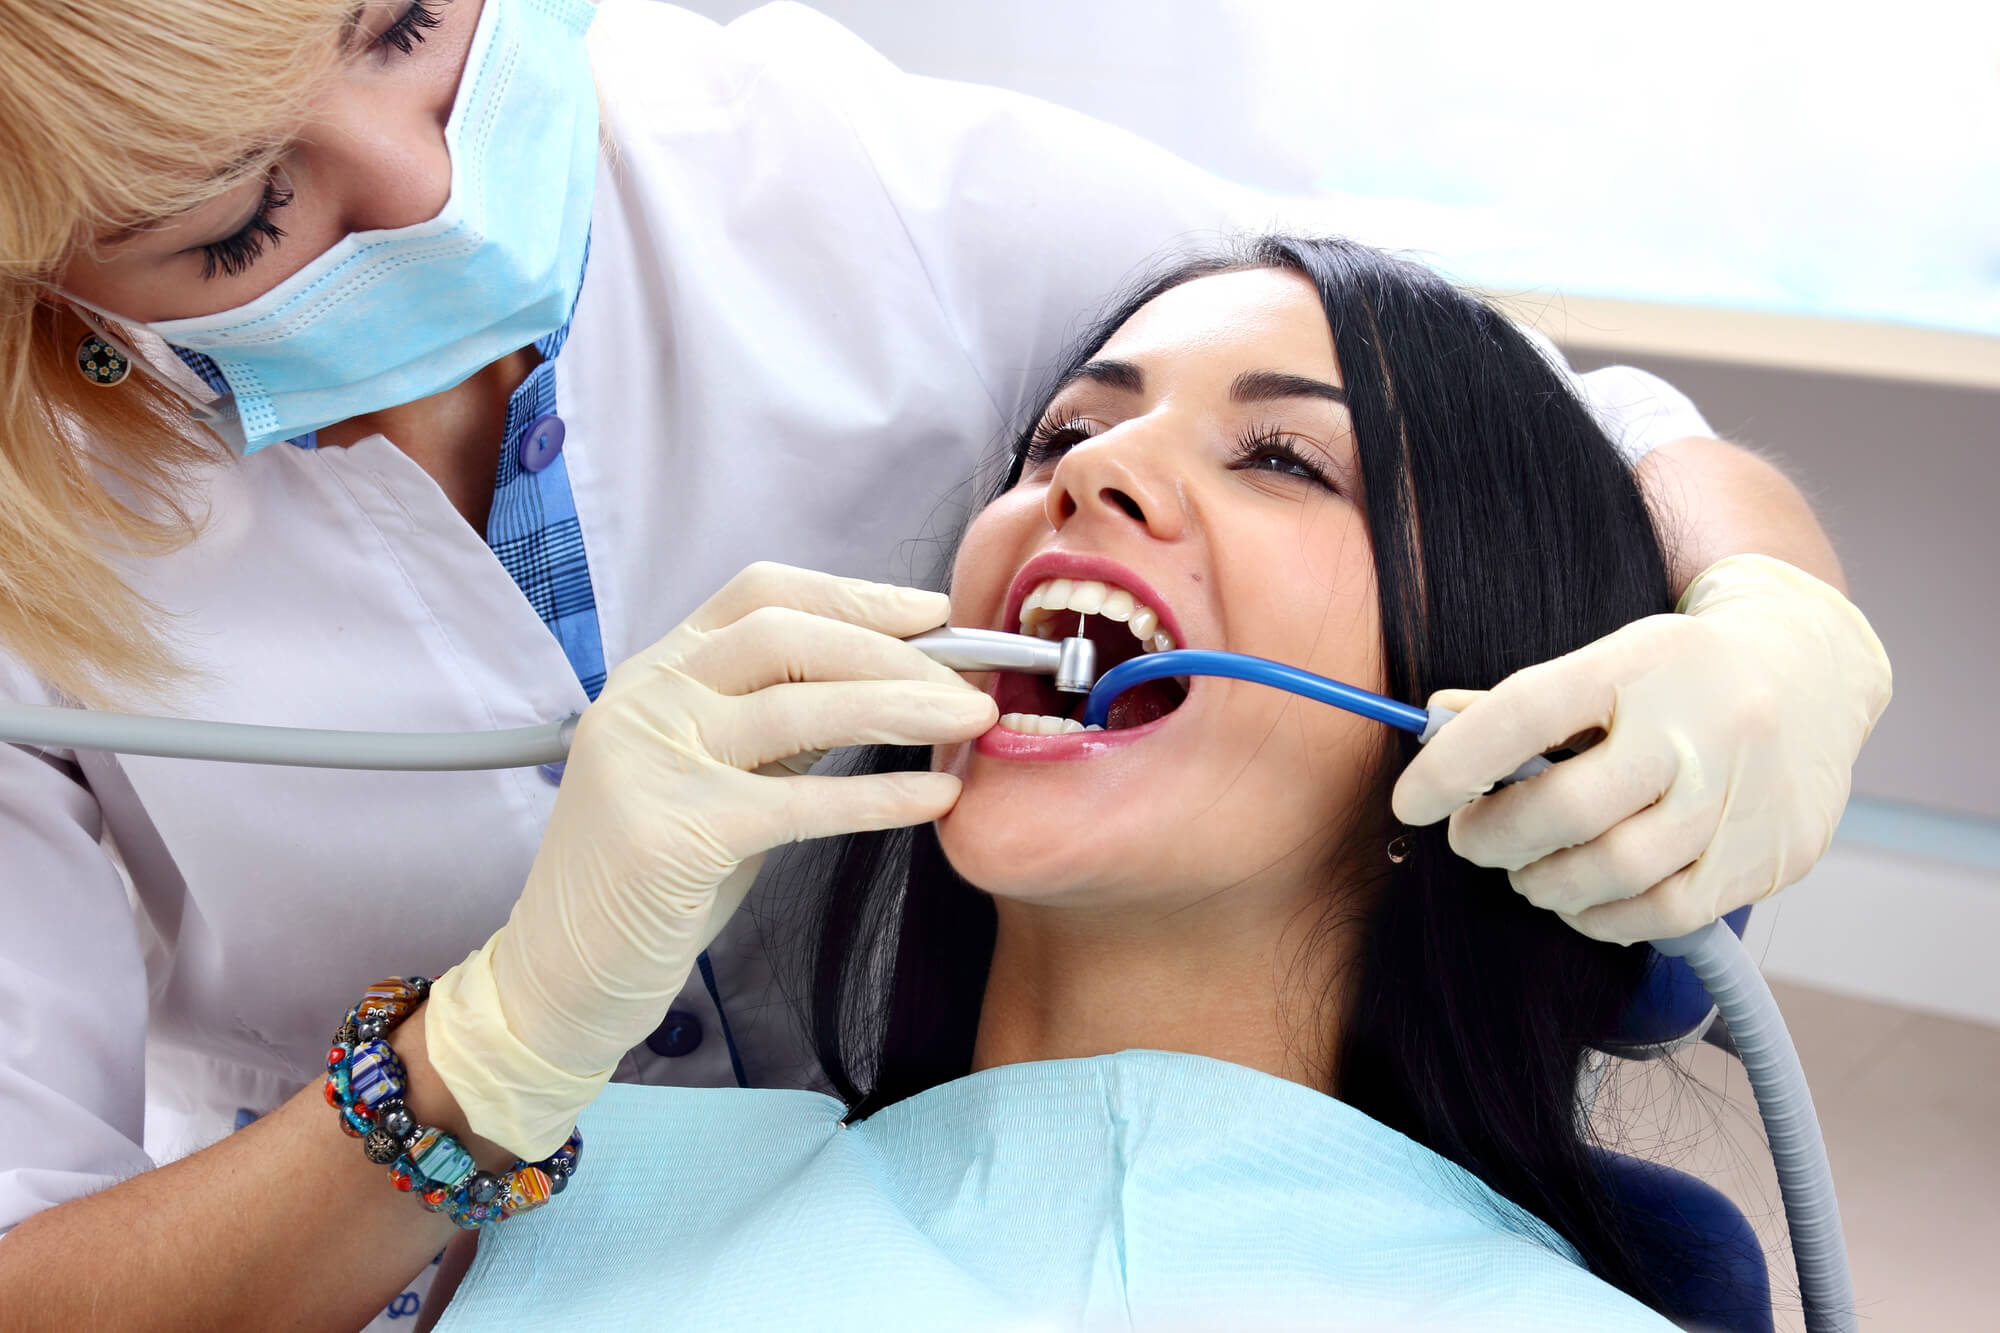 where can i get periodontics in miami treatment?